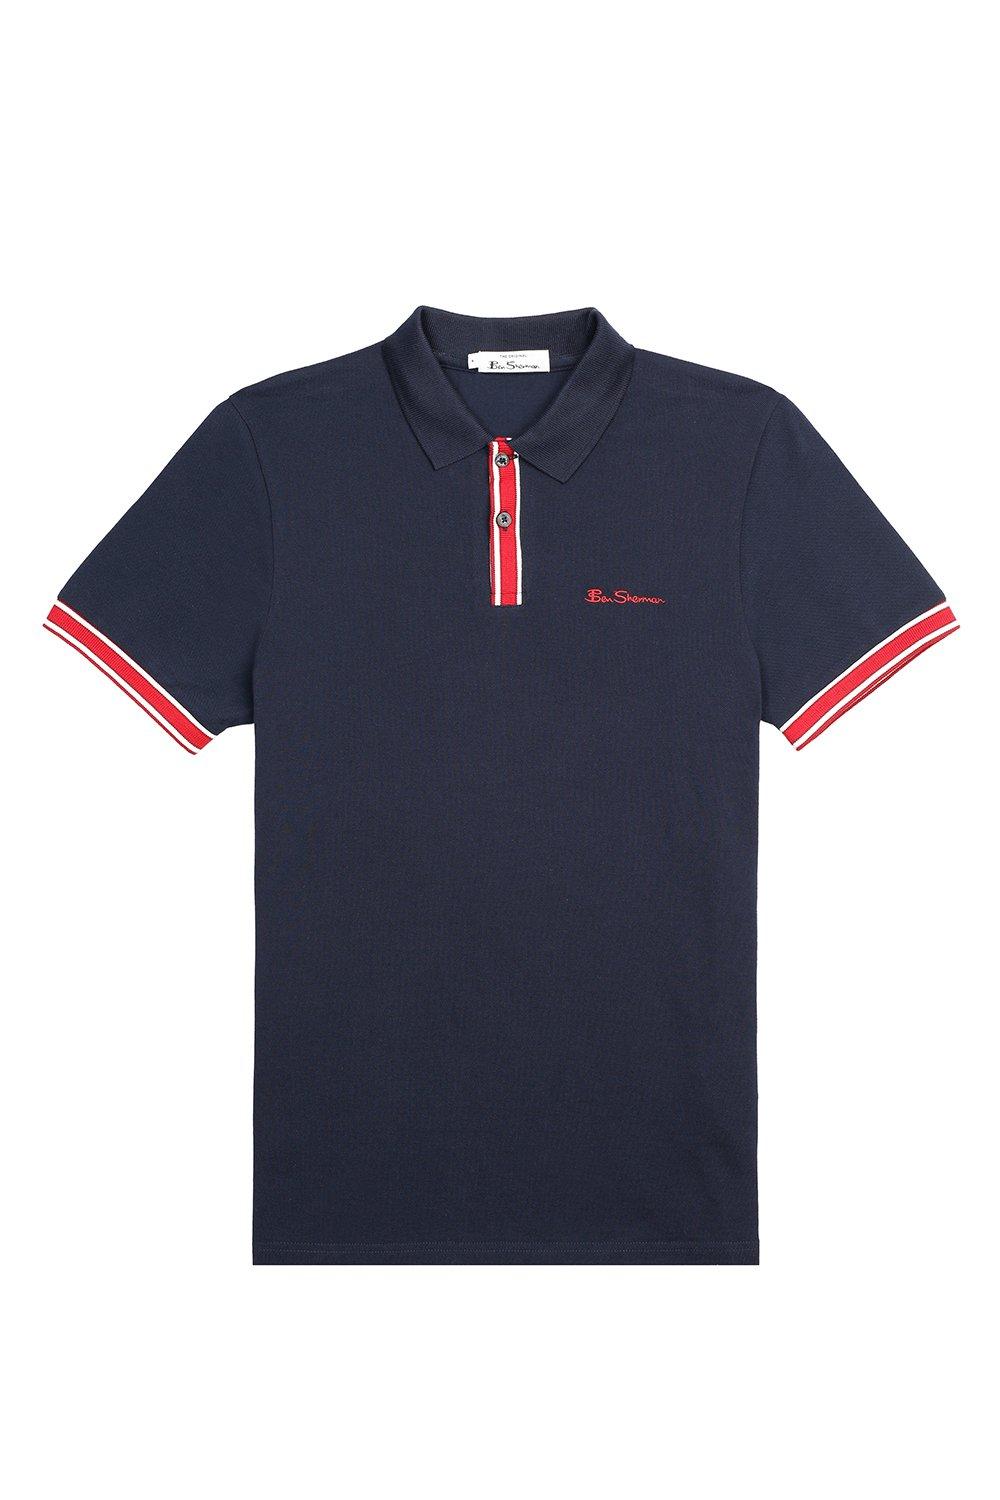 T-Shirts | Ben Sherman Mod Stripe Detail Polo | Ben Sherman